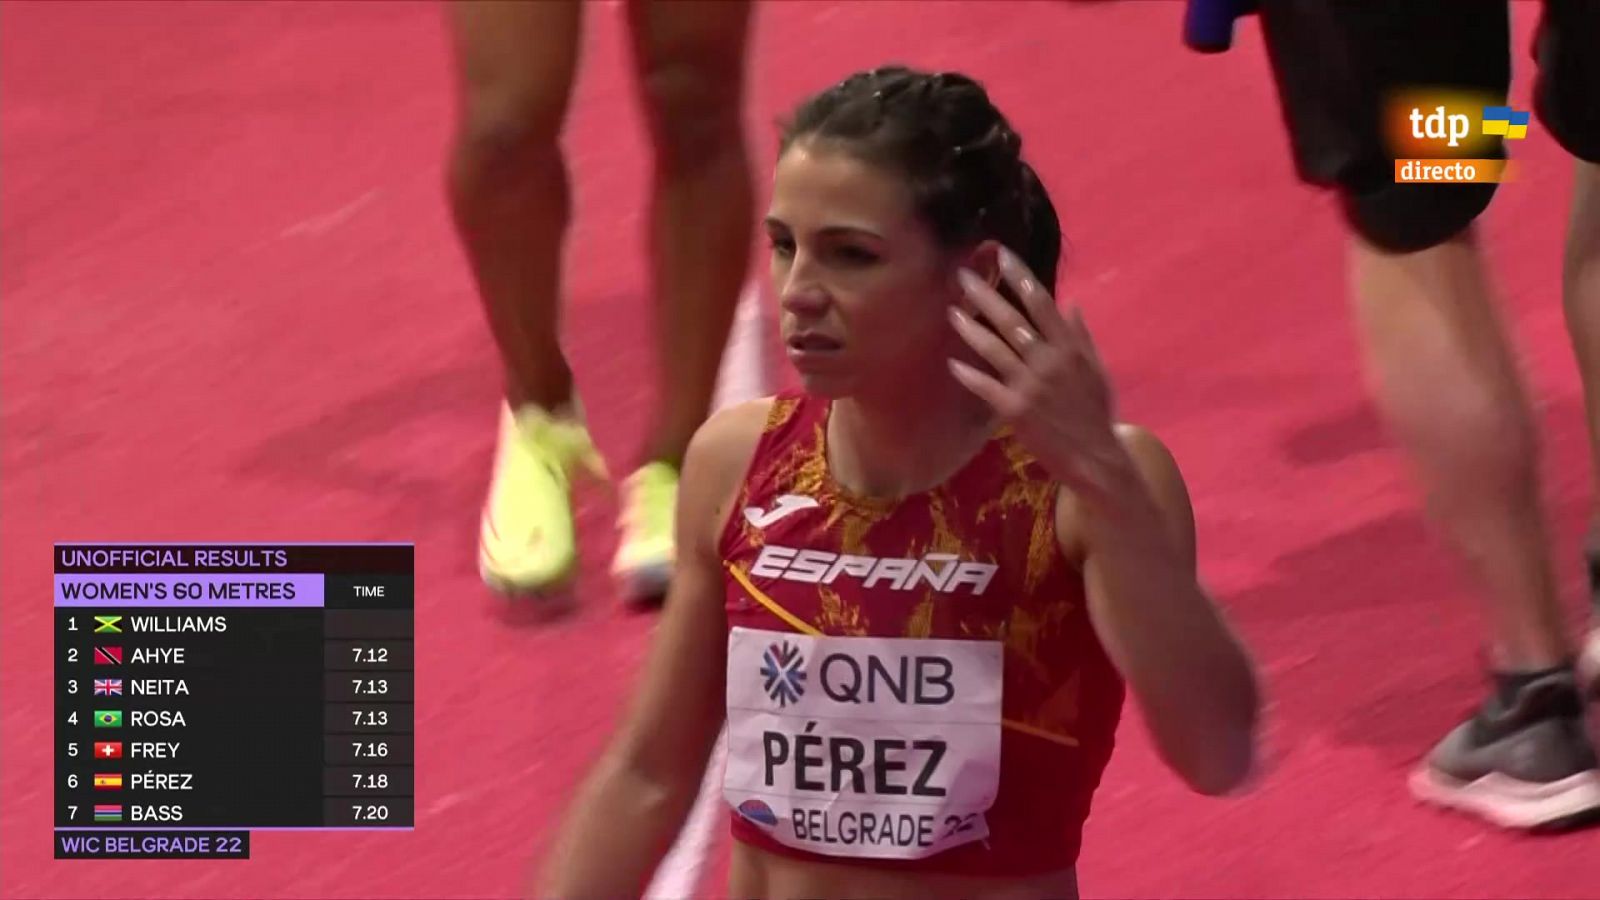 Mundial de atletismo | Maribel Pérez, eliminada tras un amago de descalificación en Belgrado -- Ver ahora